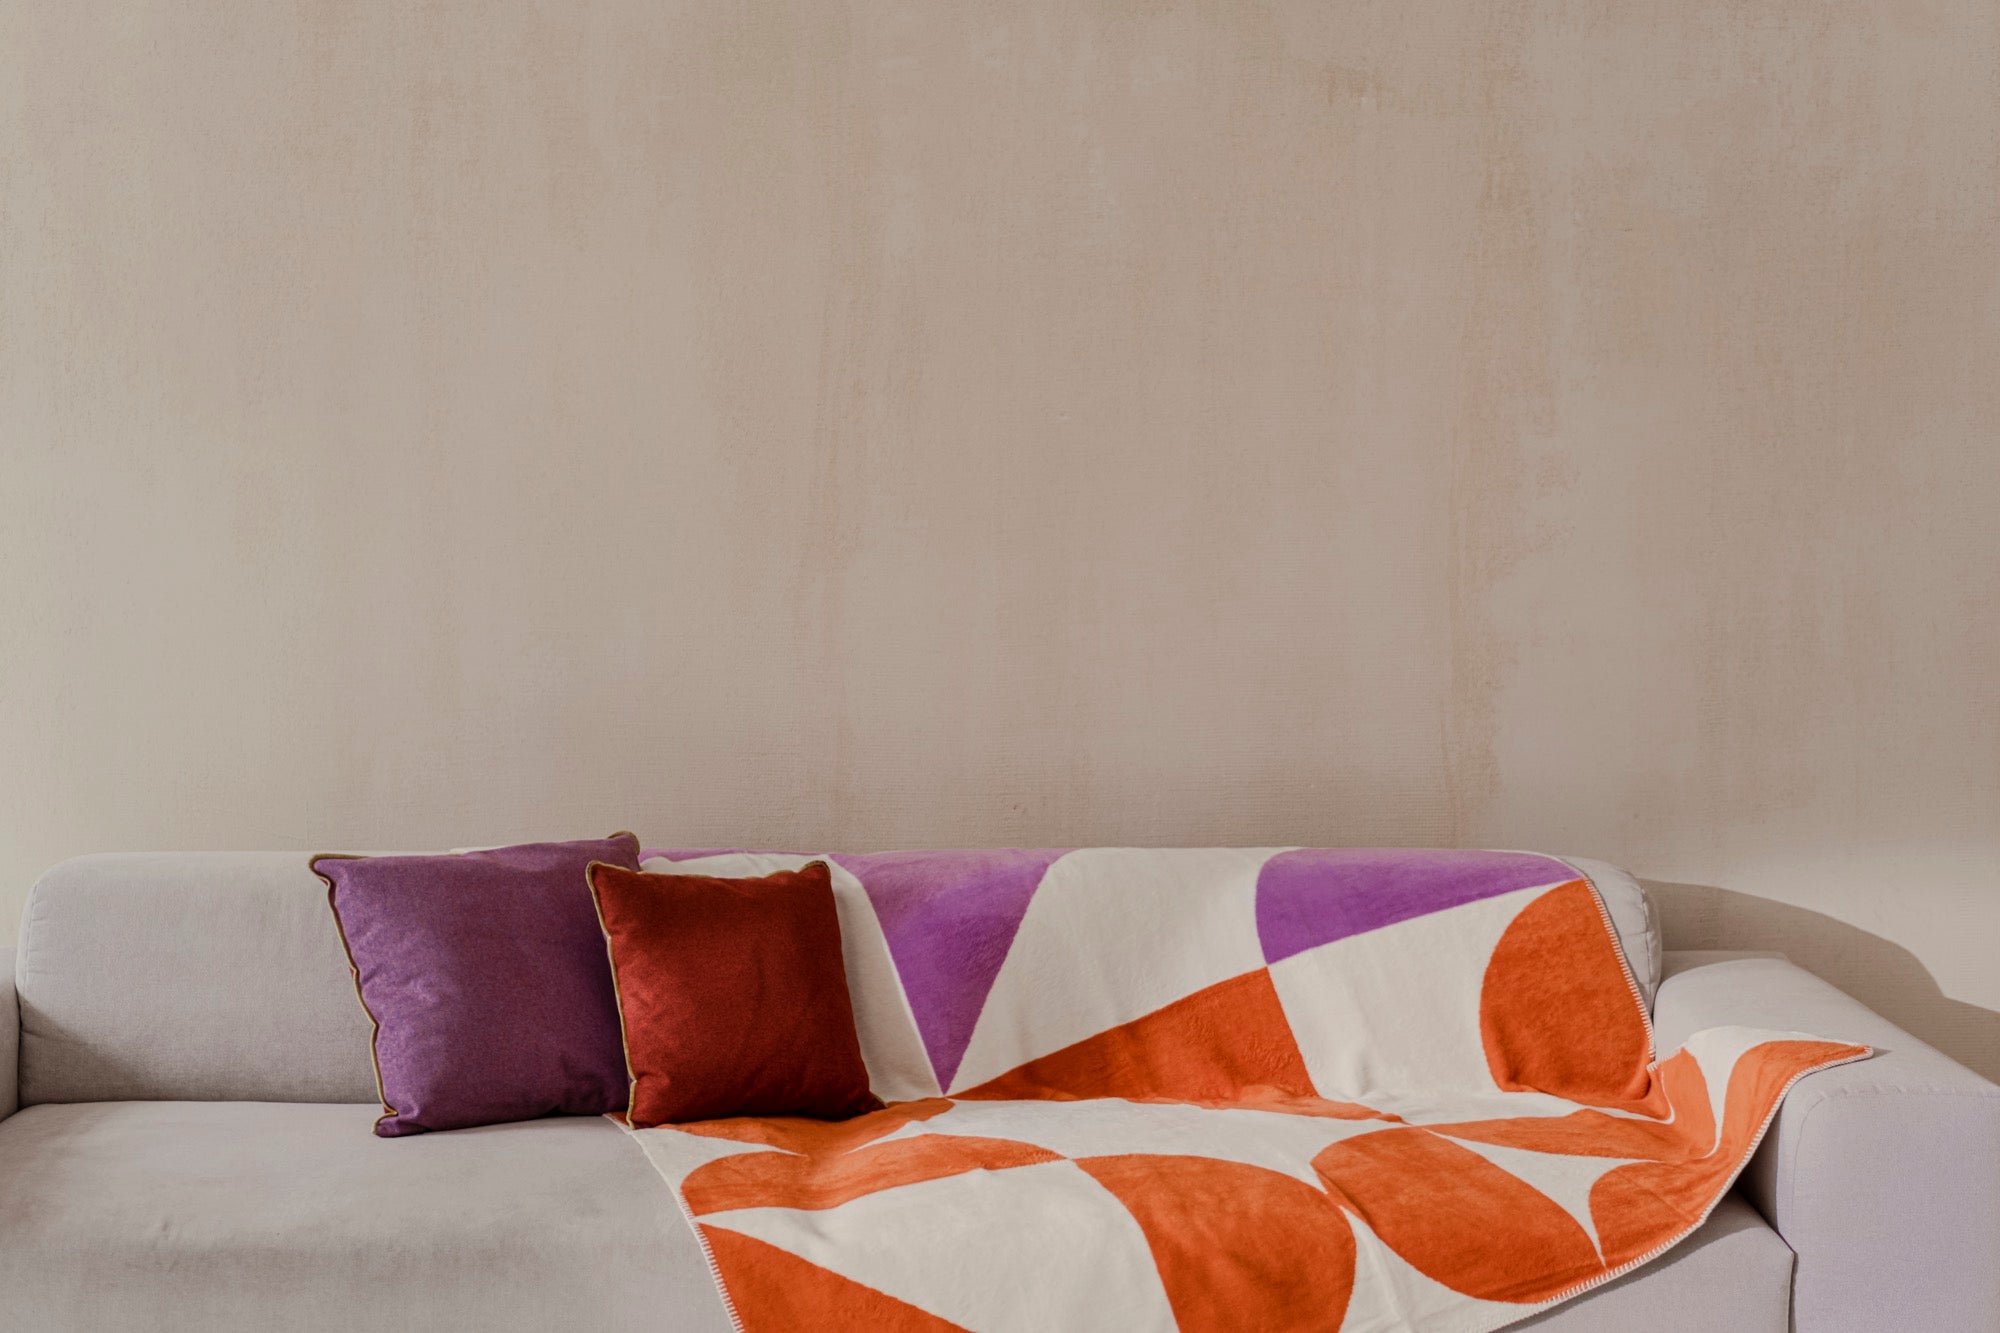 geschenk-guide wohnzimmer rosa Überwürfe kissen orange rot Terrakotta violett 